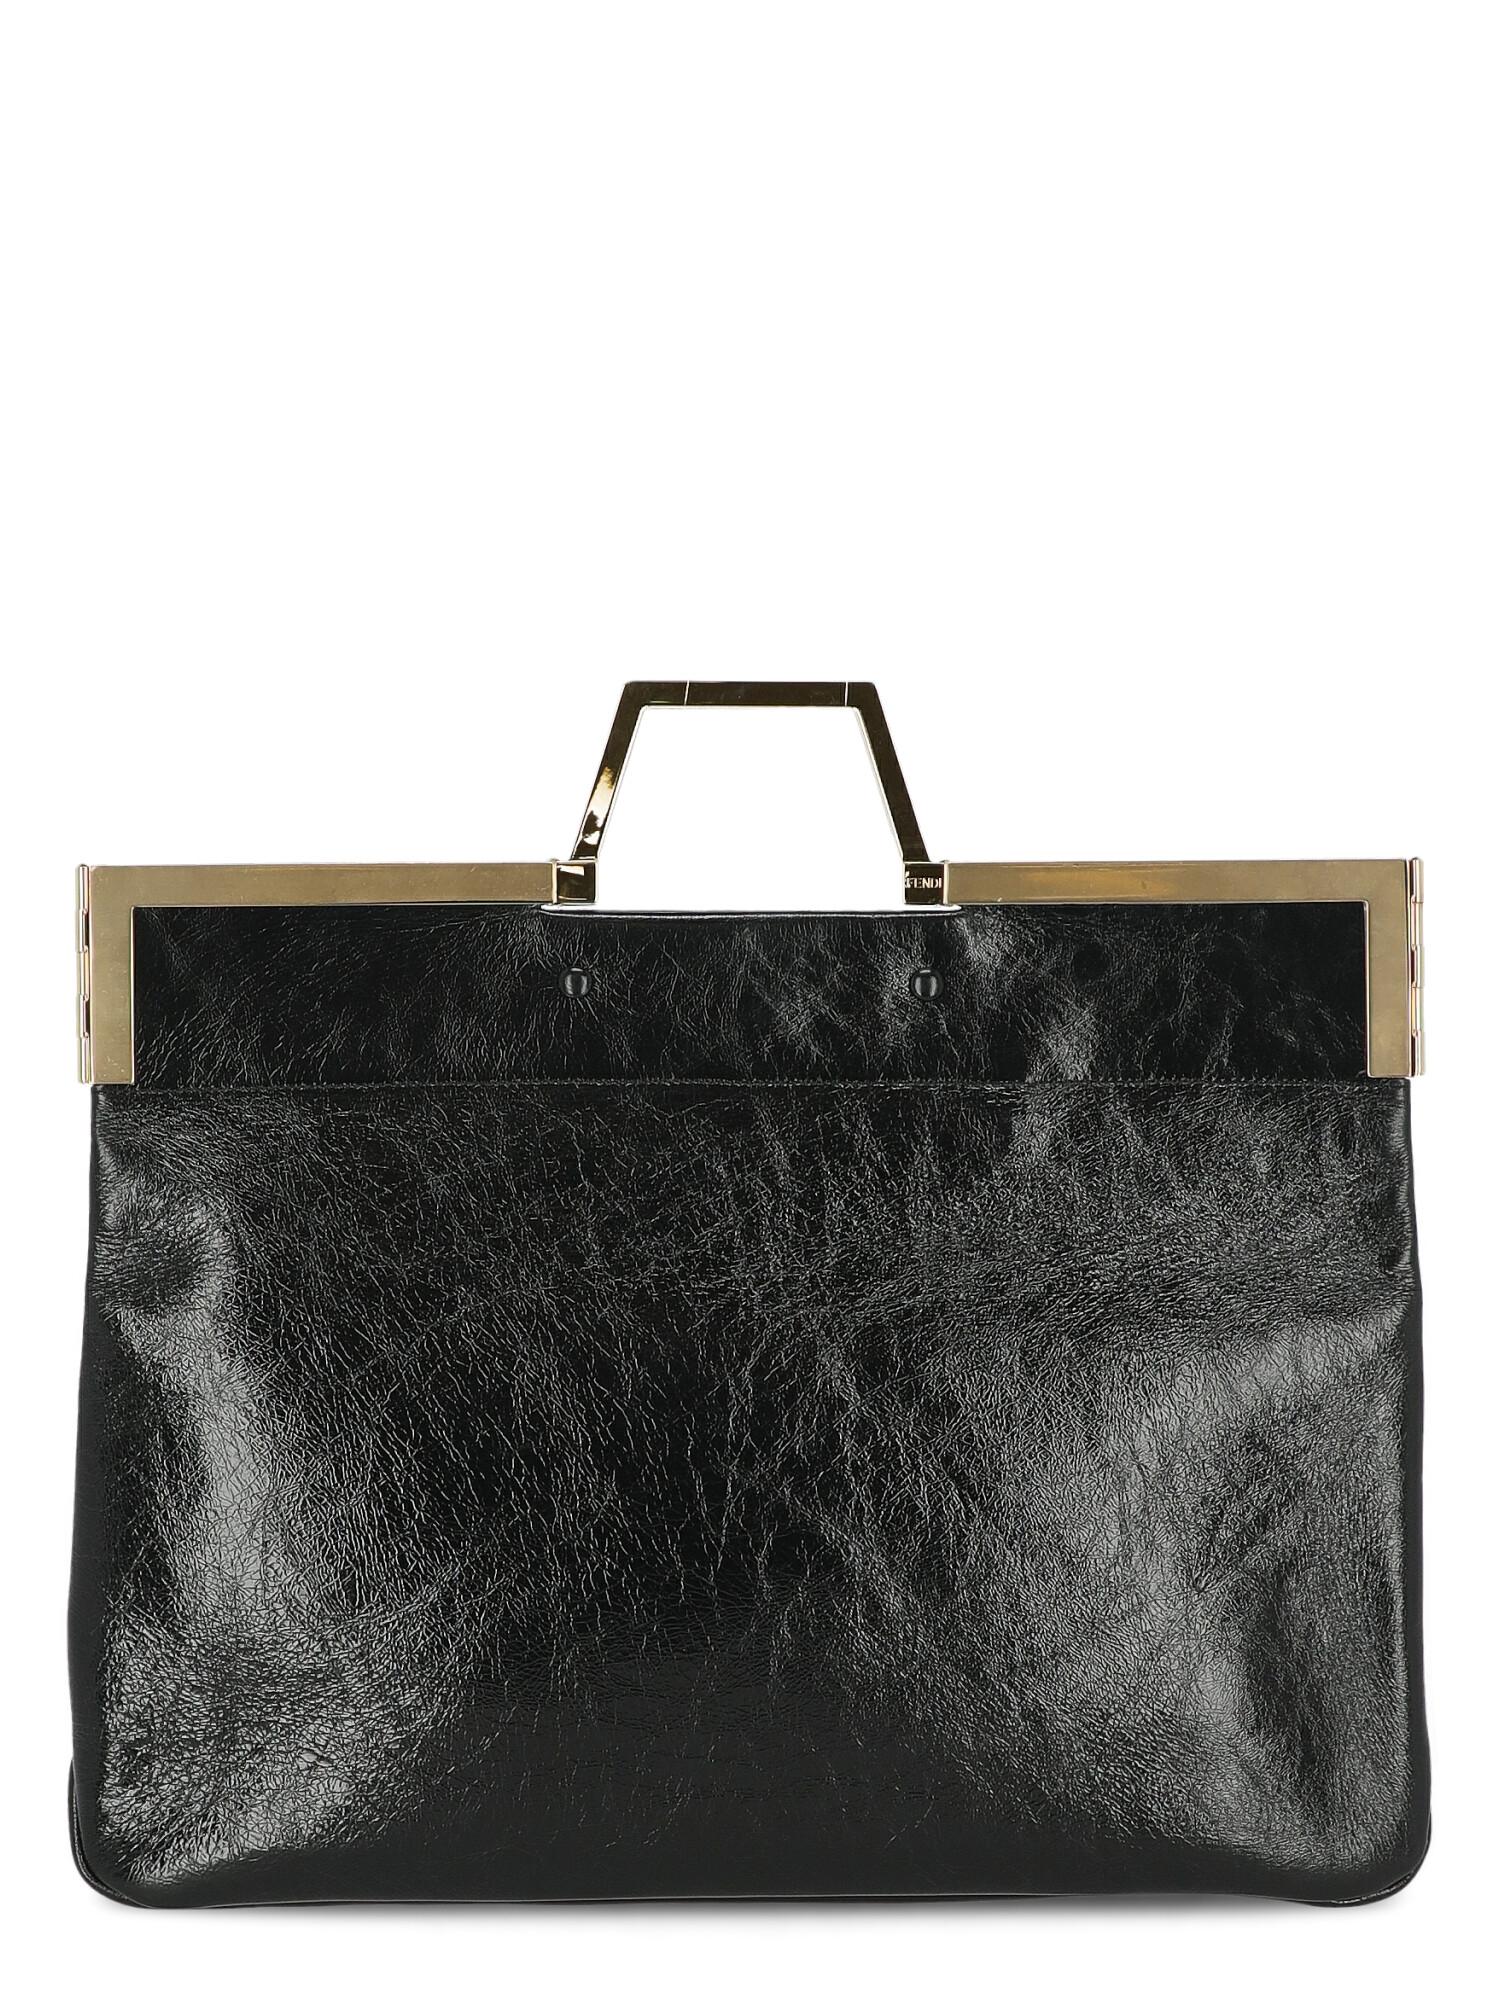 Fendi Women's Handbag Black Leather For Sale 1